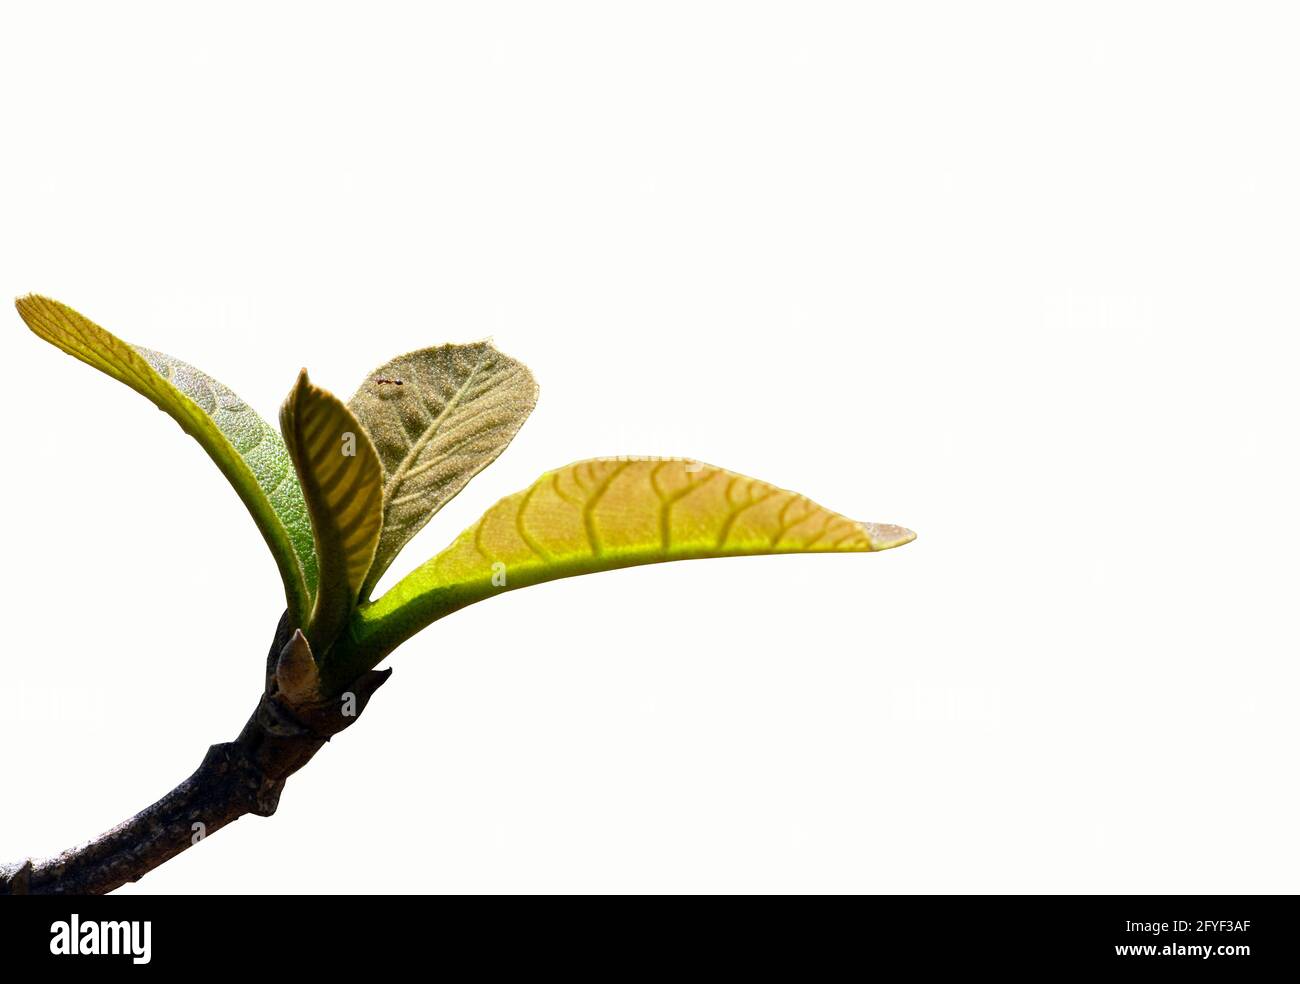 Nahaufnahme von schönen jungen Blättern der Teakholzpflanze (Tectona grandis) und einer Ameise, ausgewählter Fokus, isoliert auf weißem Hintergrund Stockfoto